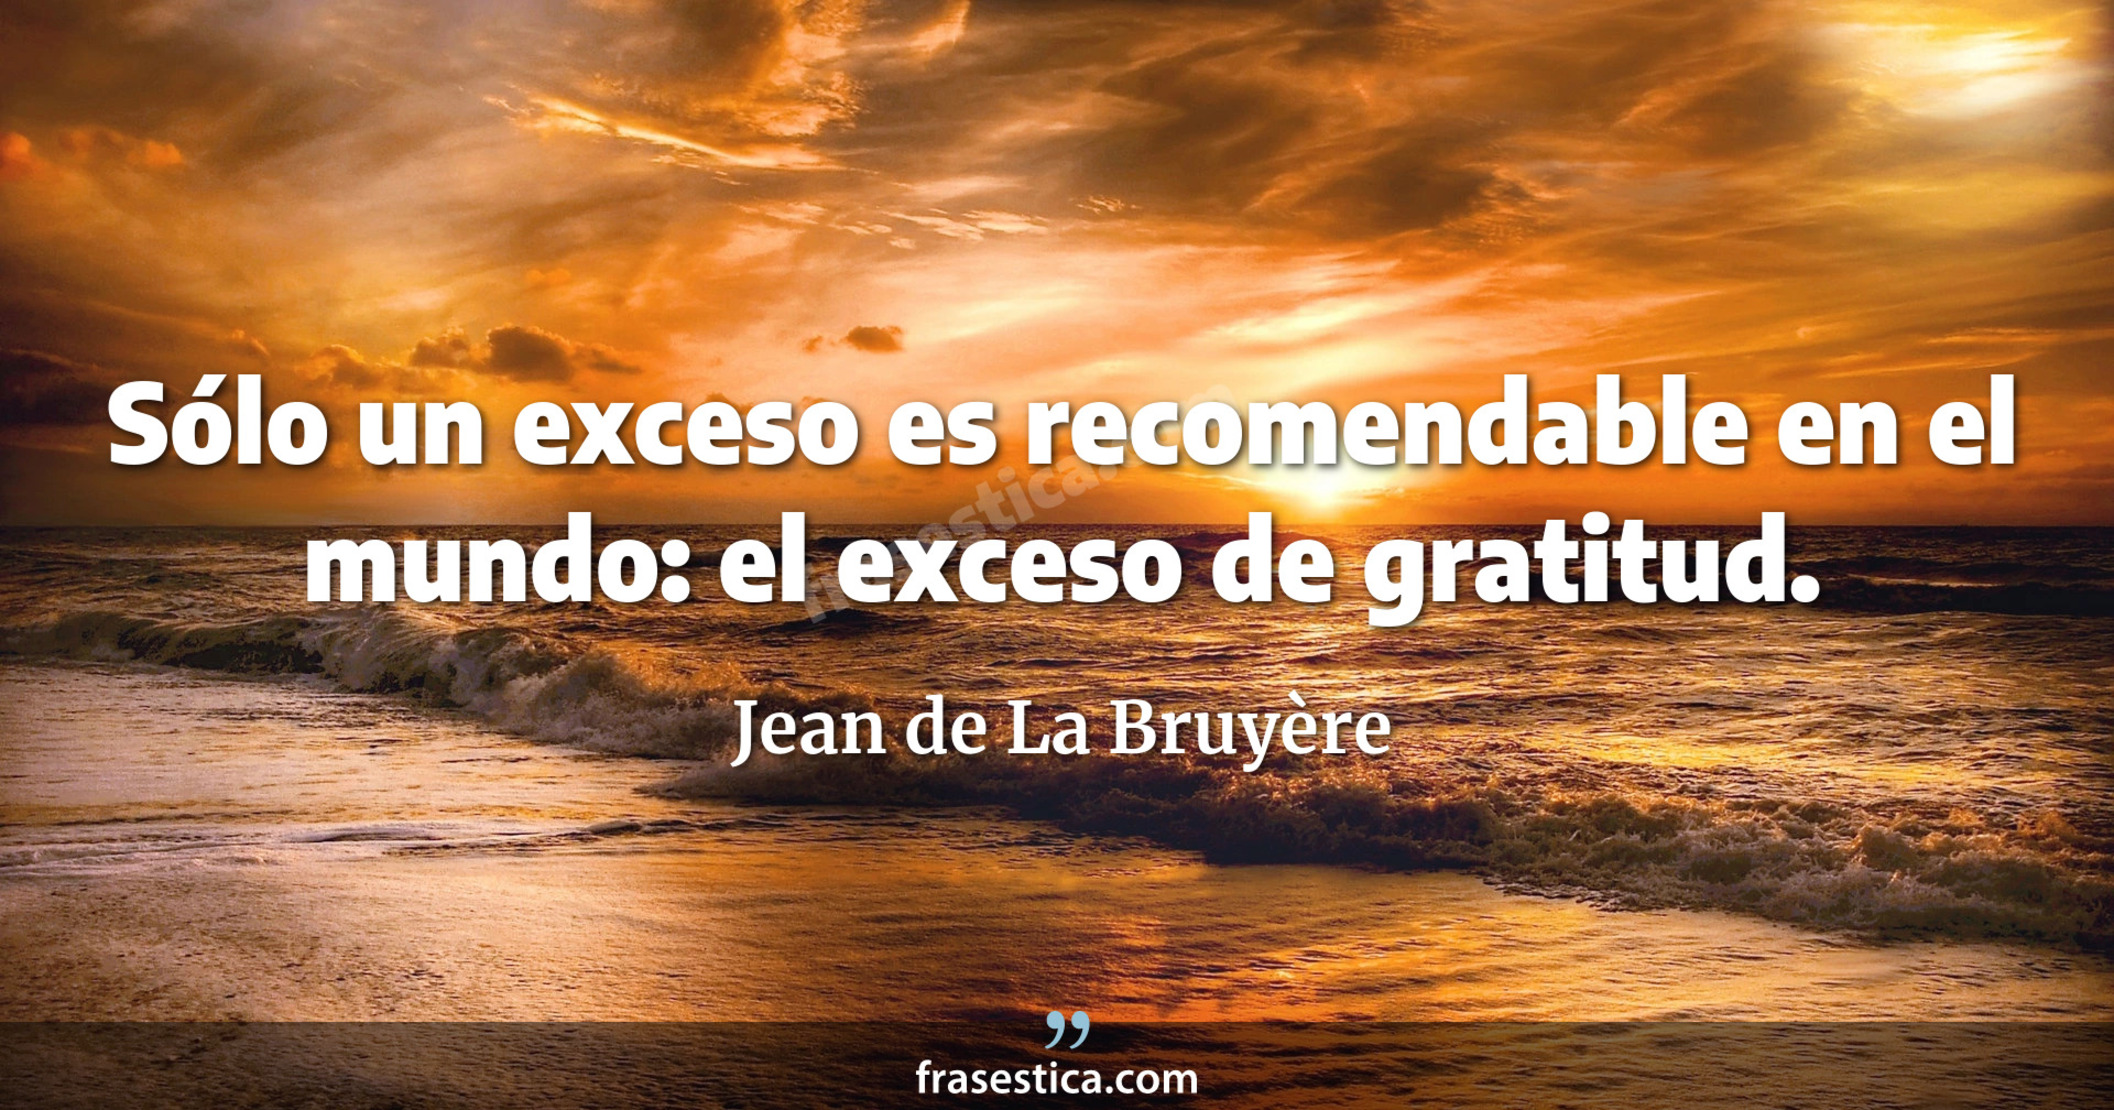 Sólo un exceso es recomendable en el mundo: el exceso de gratitud. - Jean de La Bruyère